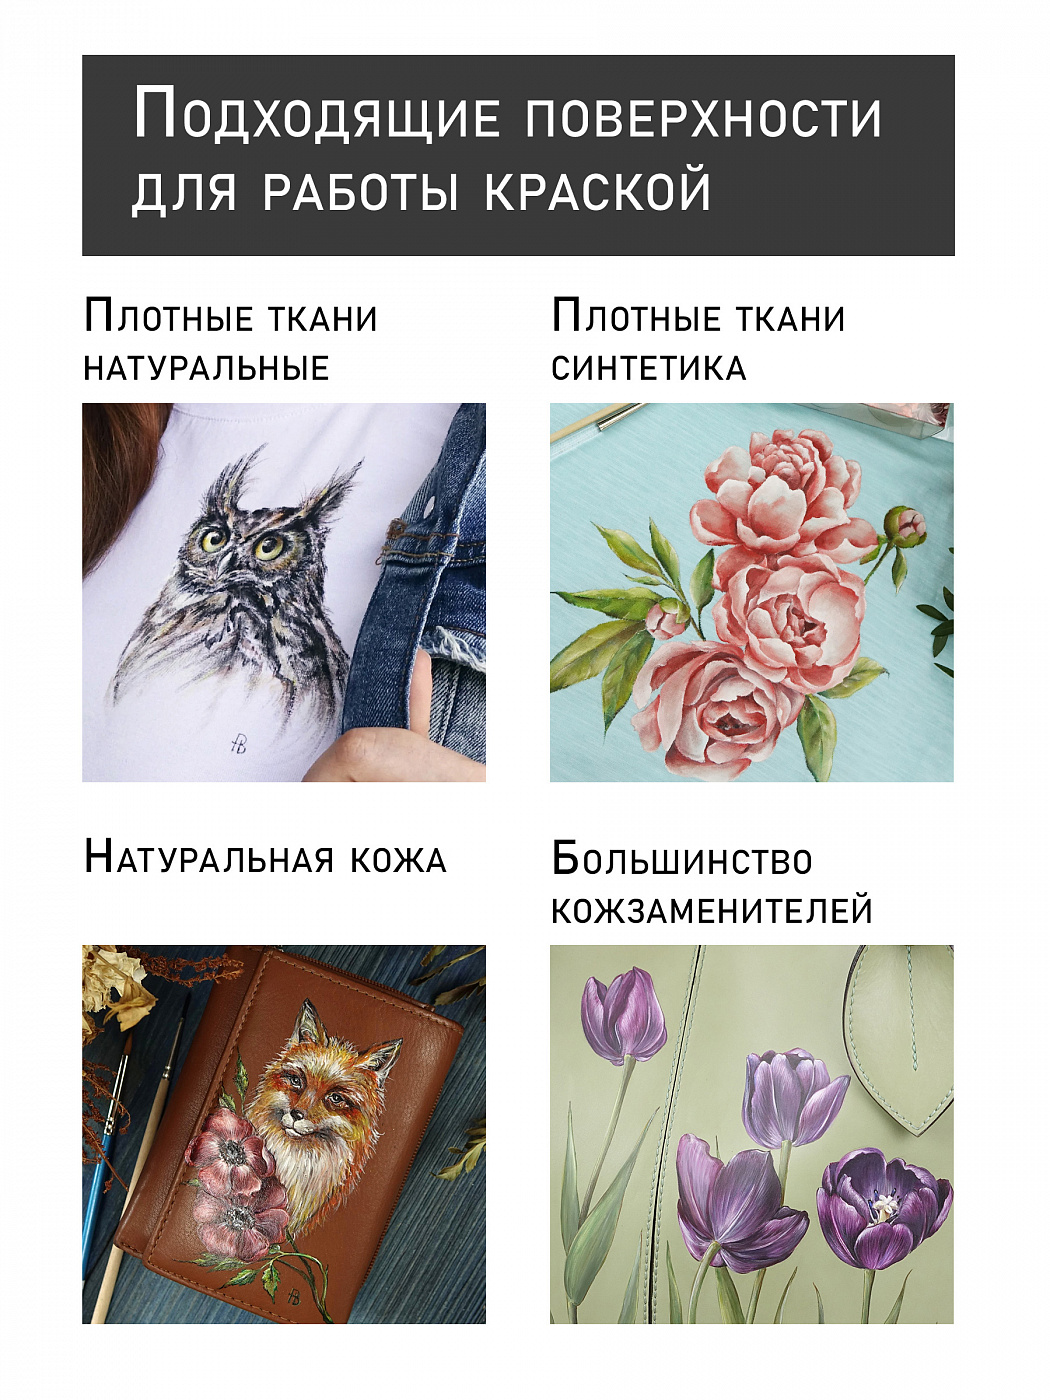 Акрил по ткани Таир 50 мл, все цвета купить в Москве по цене от 141 до 224  руб в интернет-магазине Красный карандаш